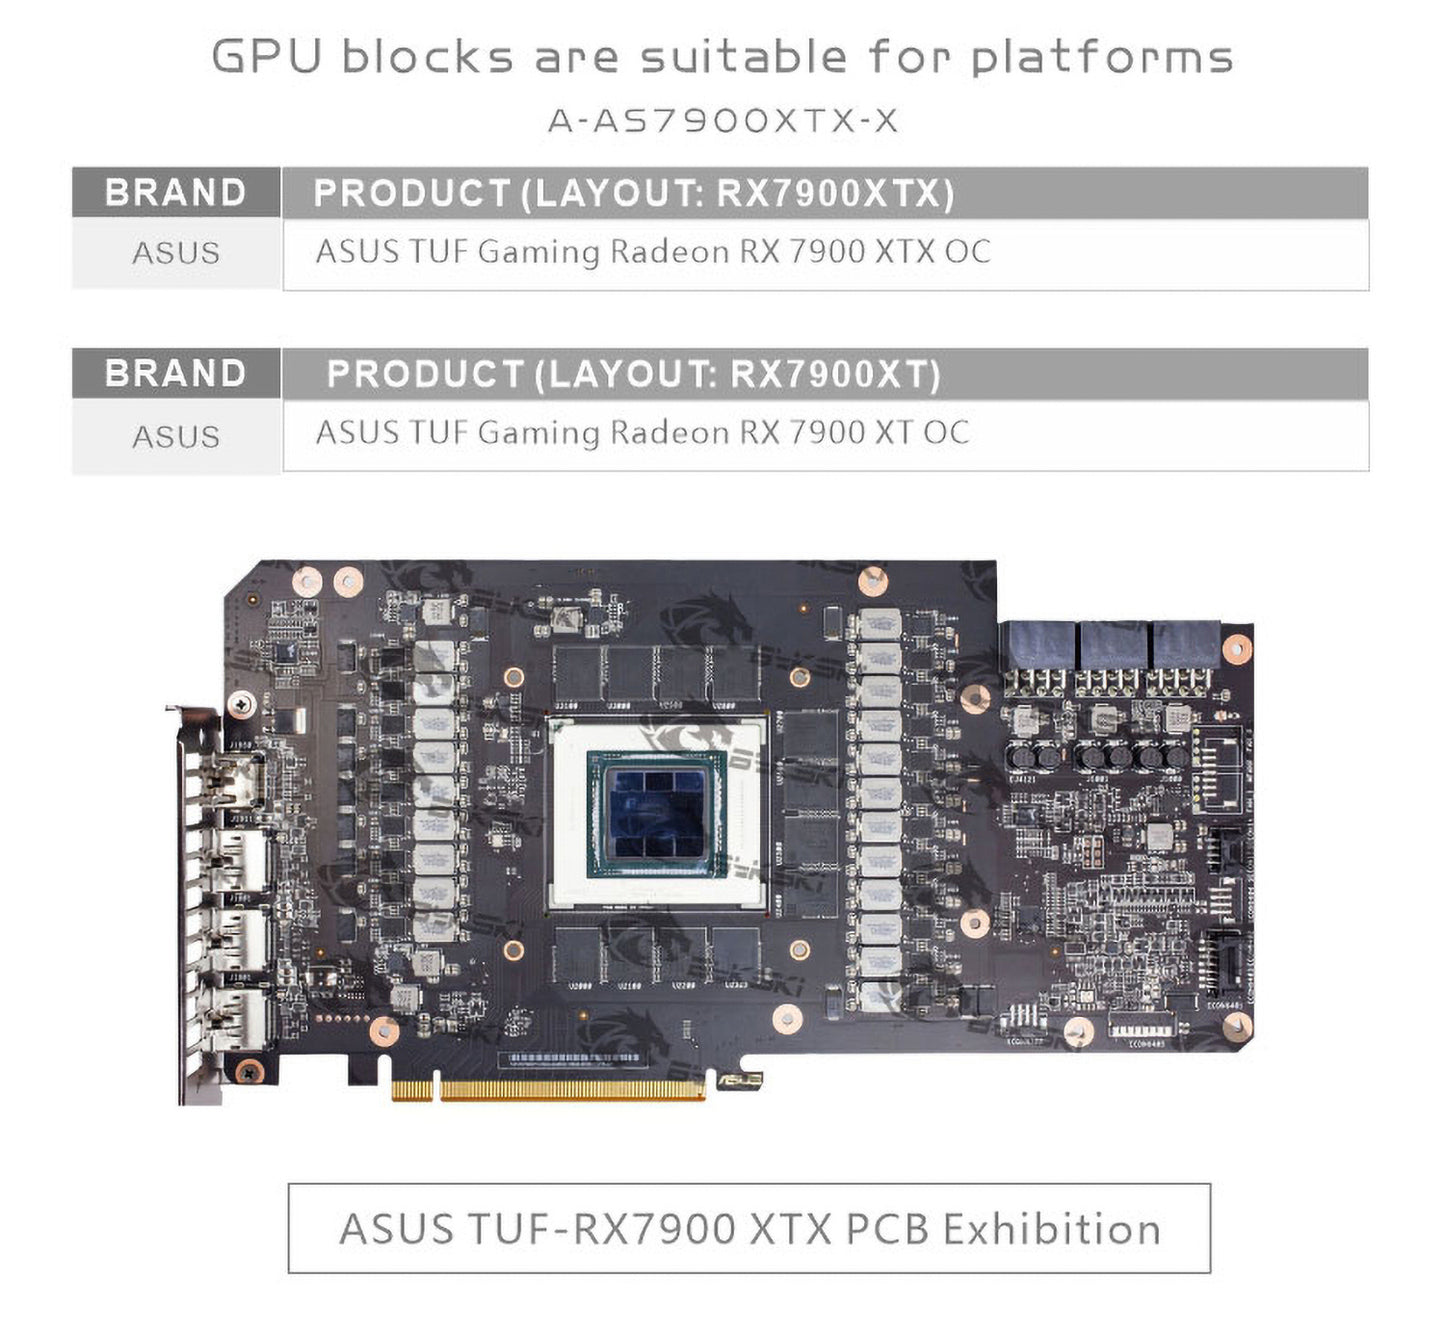 Bloc d'eau GPU Bykski pour Asus TUF Gaming RX 7900 XTX OC / 7900 XT OC, couverture complète avec refroidisseur de refroidissement par eau pour PC, A-AS7900XTX-X